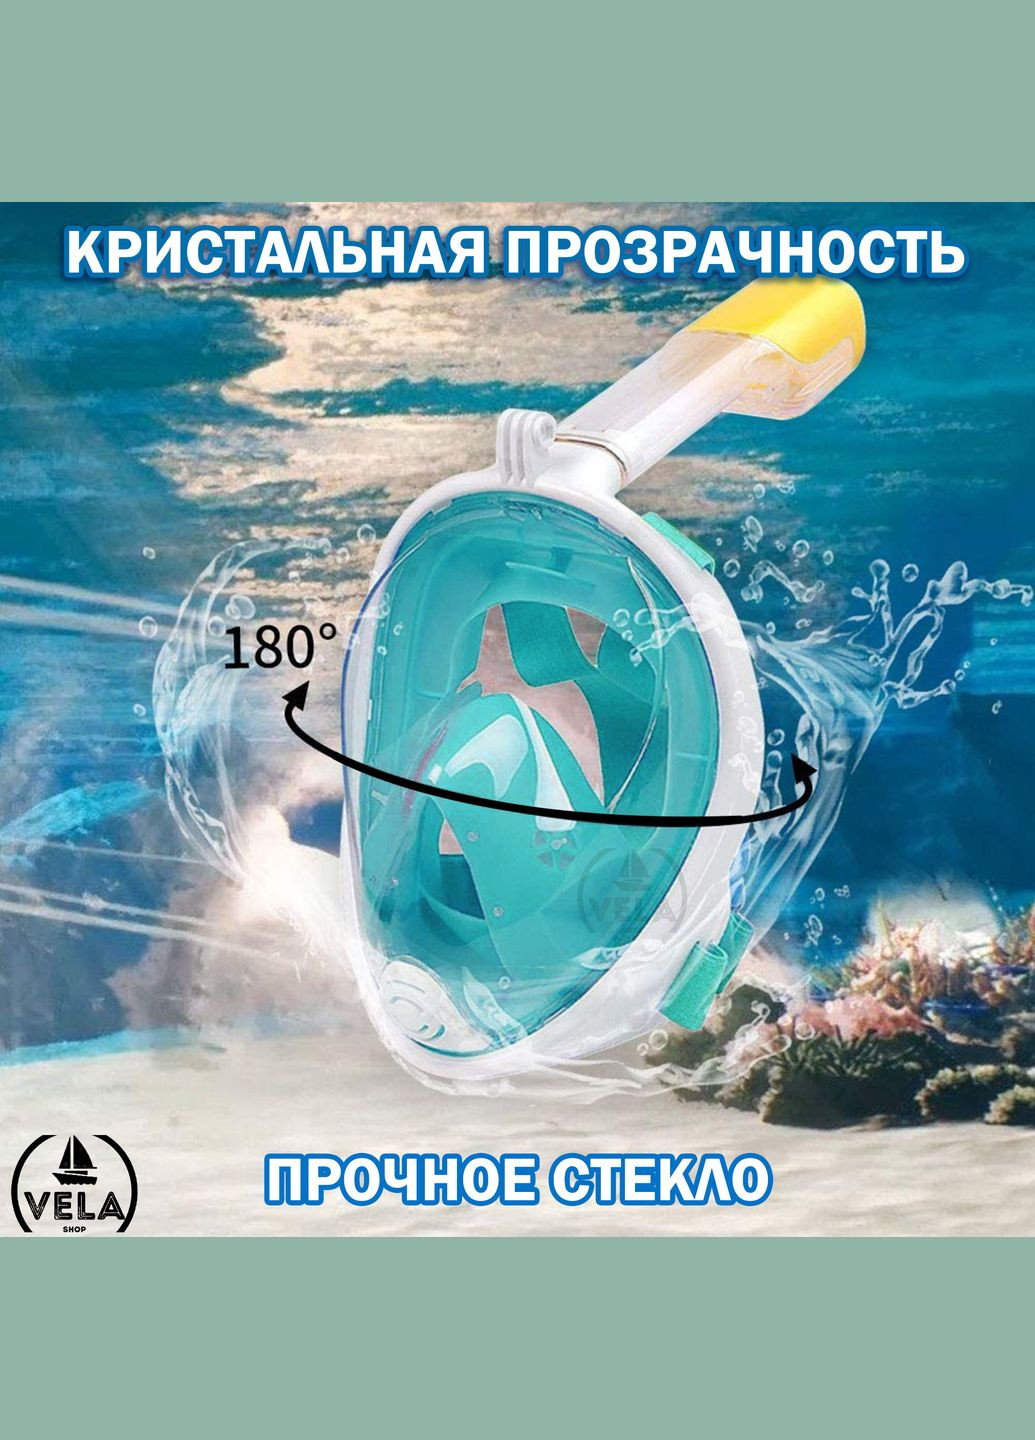 Повнолицева Снорклінг Маска L/XL FreeB панорамна на все обличчя для плавання купання пірнання - Плавальні Окуляри мономаска н Free Breath (275928351)